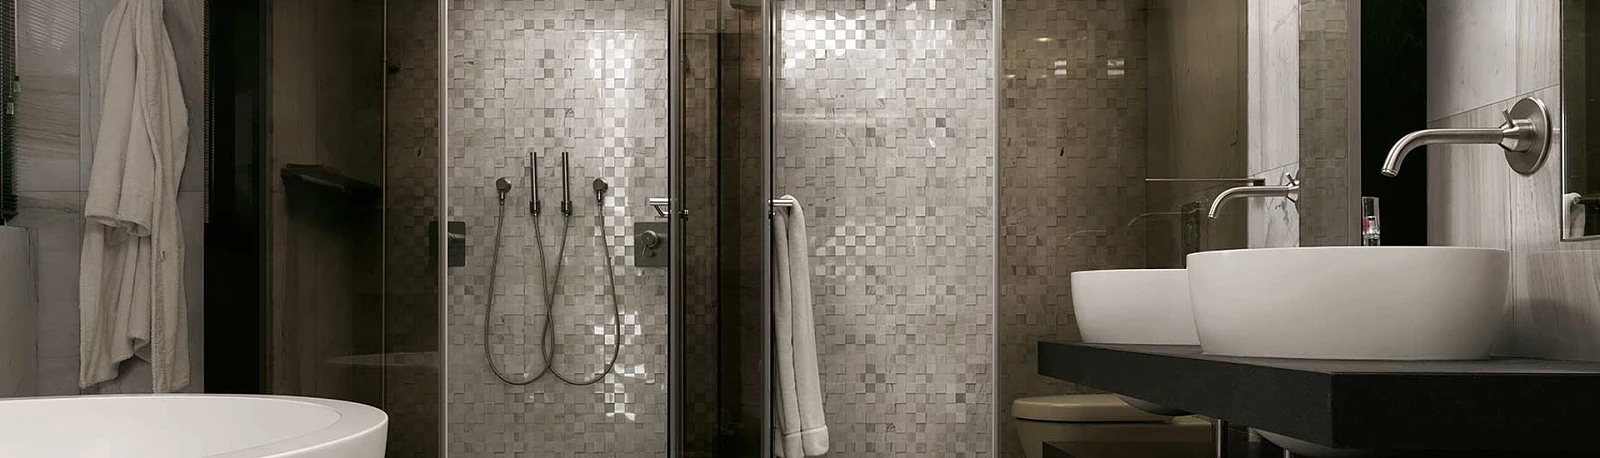 łaz_k.jpg  Praktyczny minimalizm – męska łazienka | Wyposażenie wnętrz MAXFLIZ